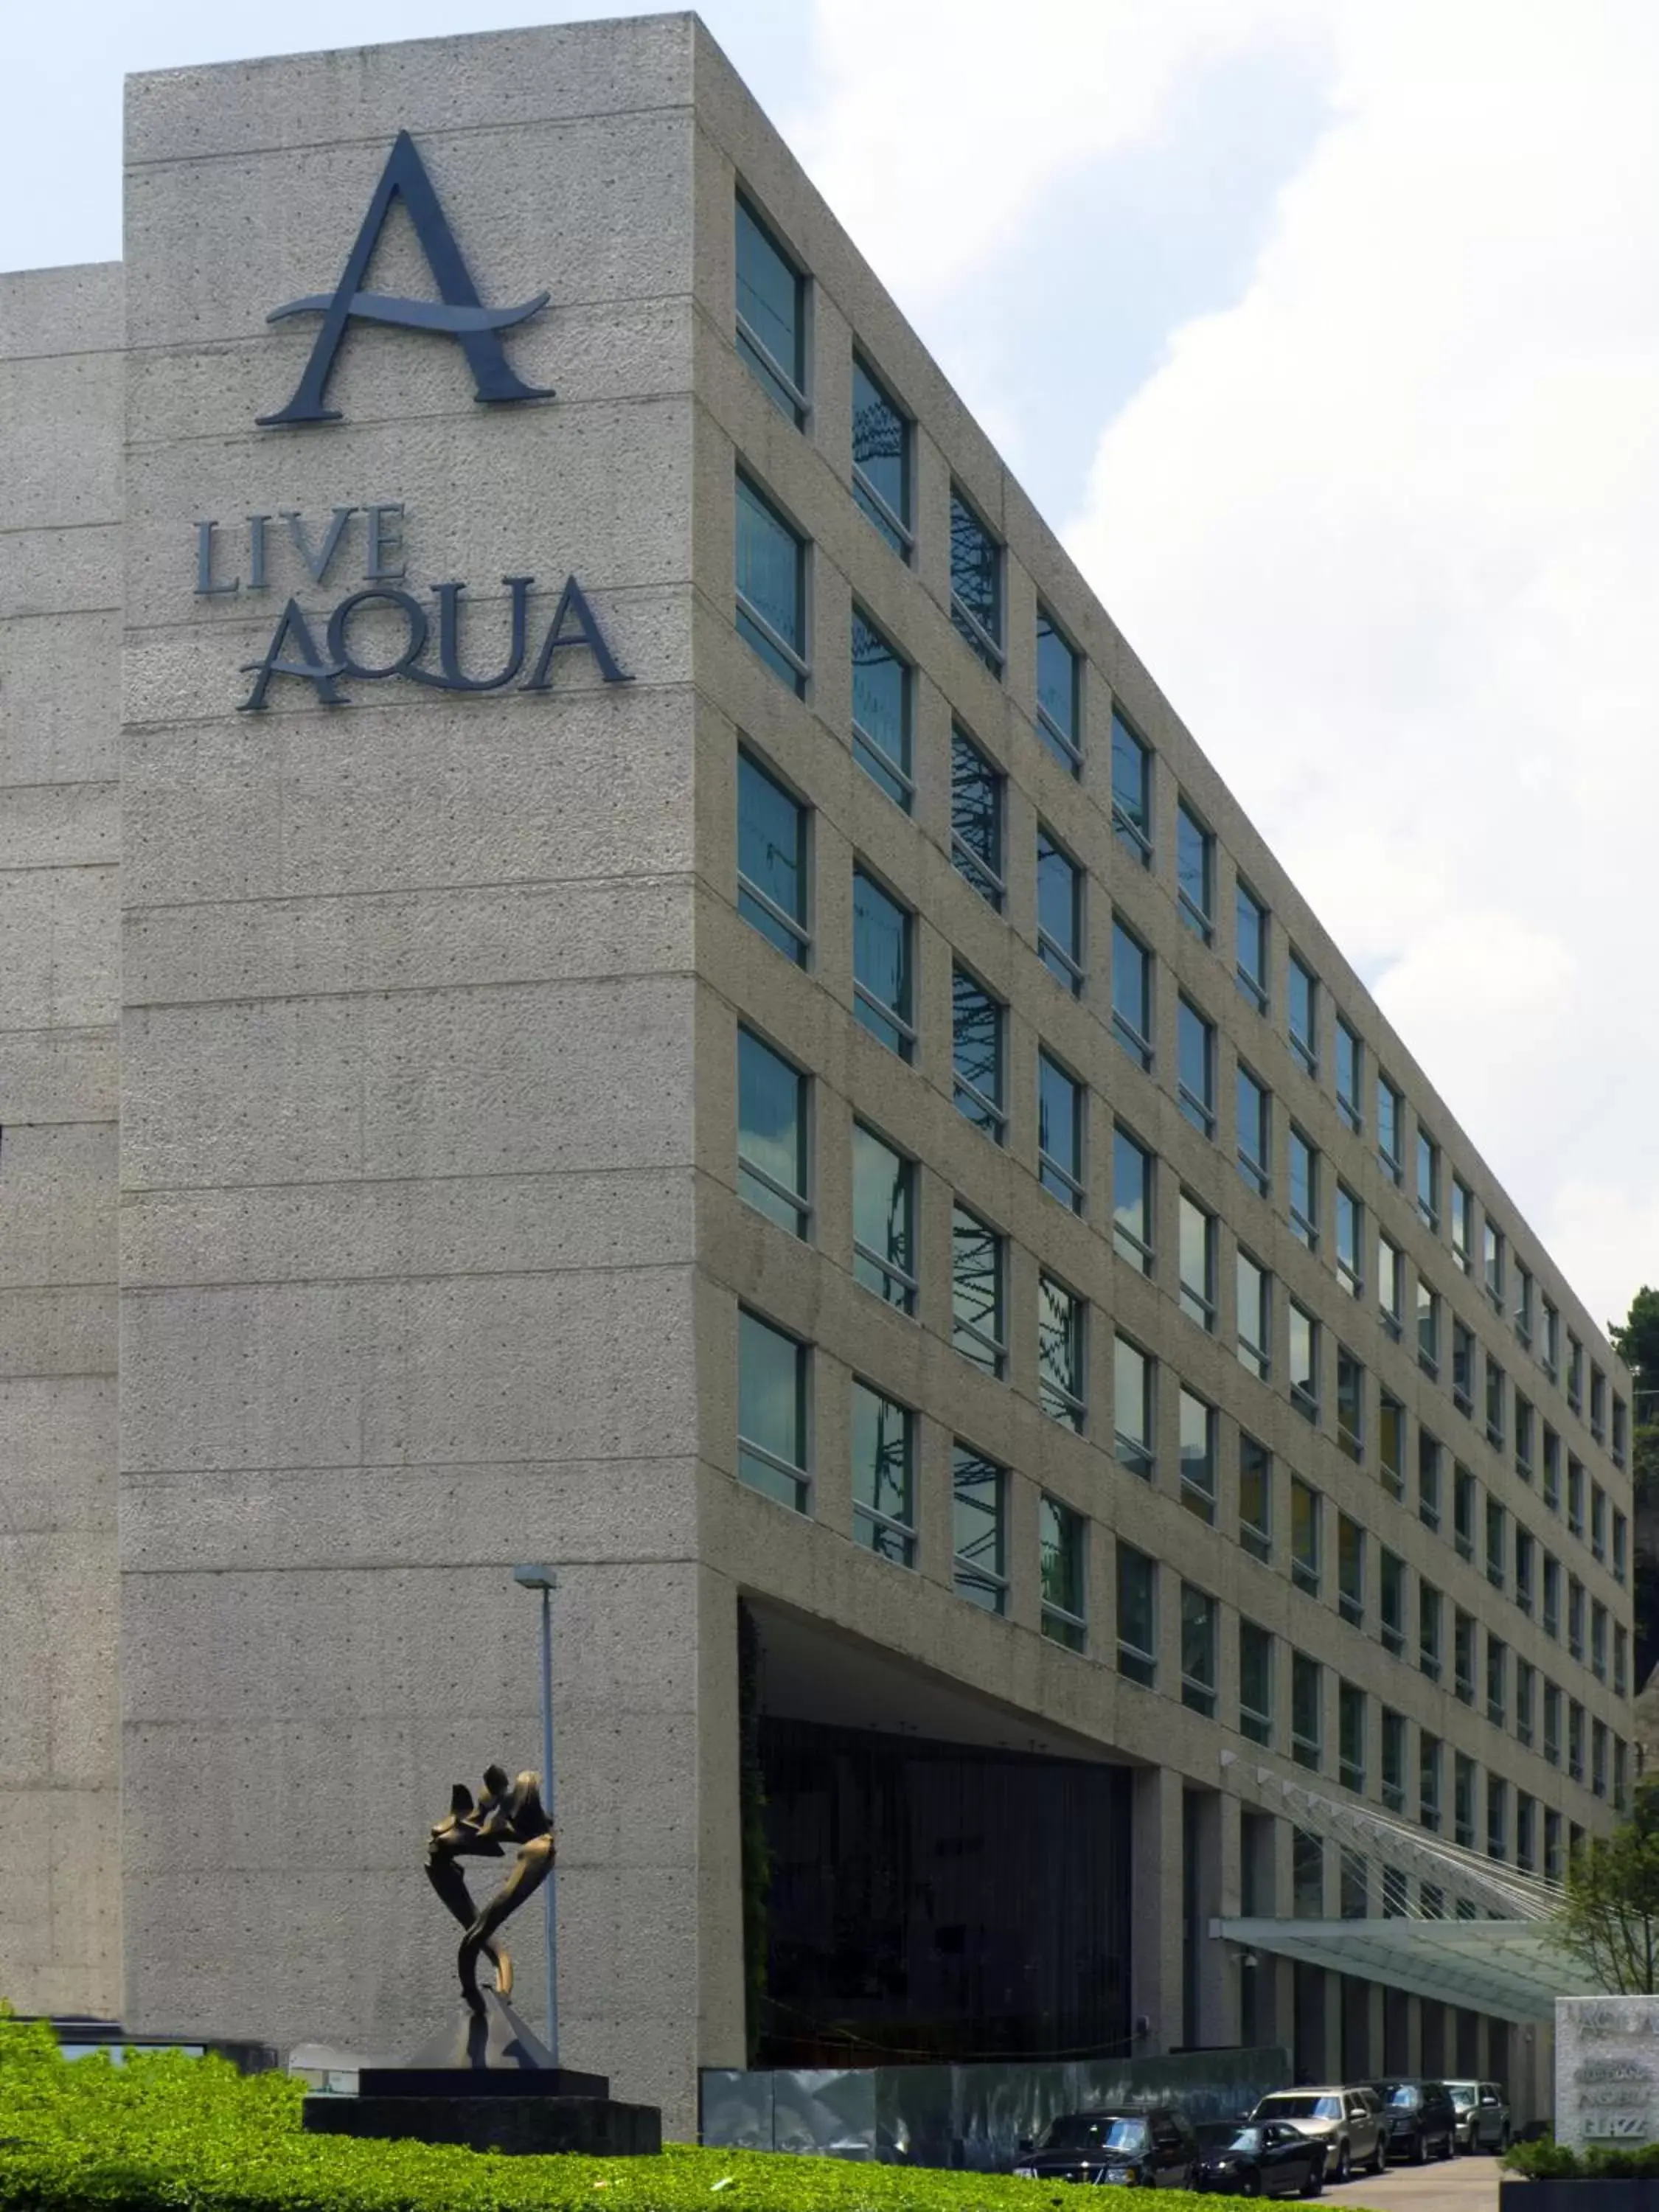 Property Building in Live Aqua Urban Resort Mexico